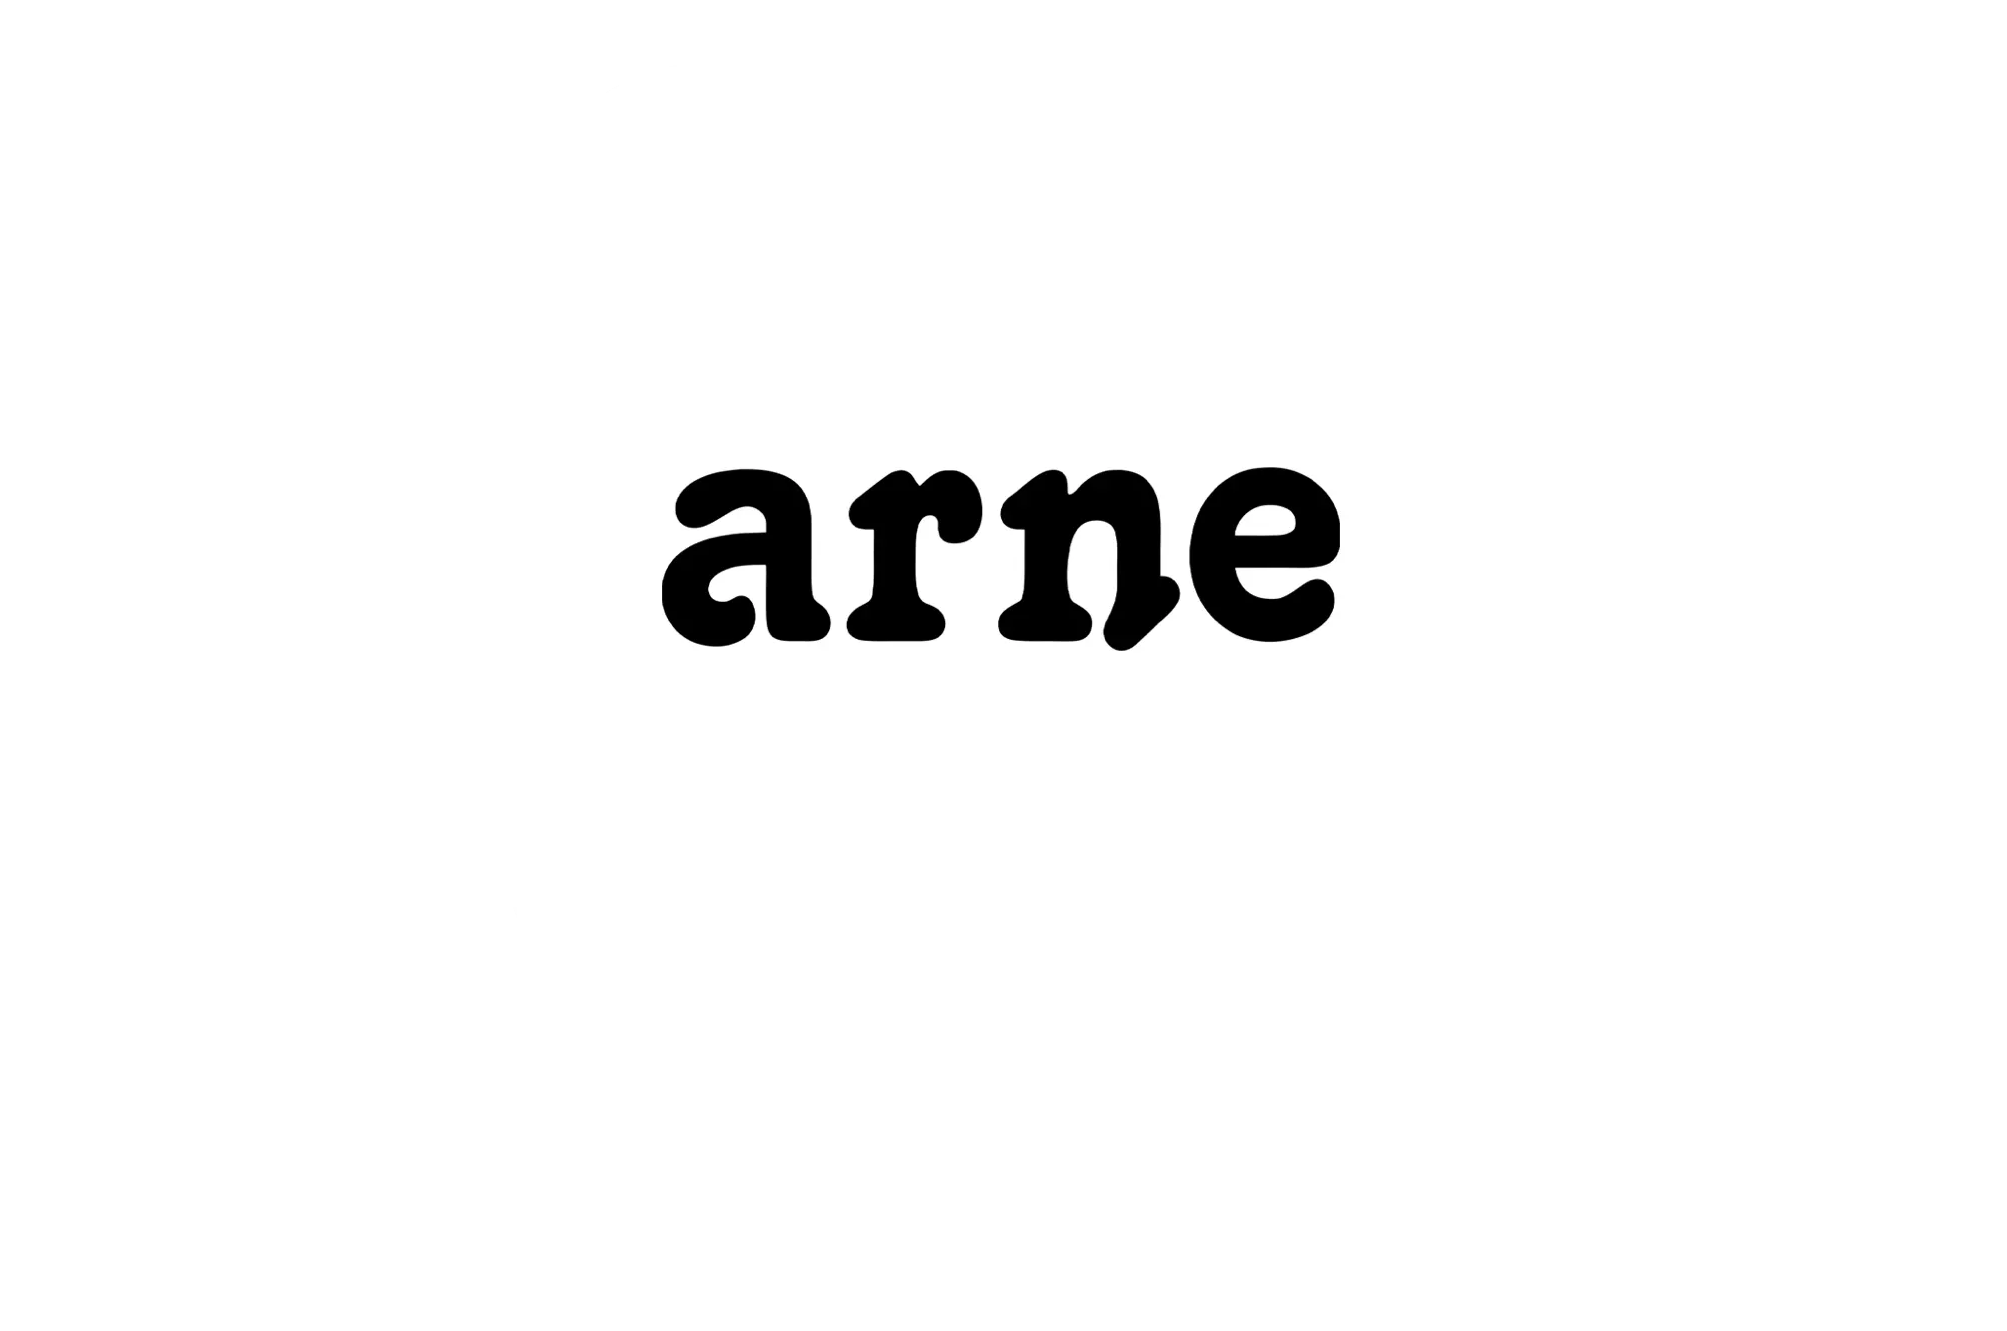 arneアプリバッジ